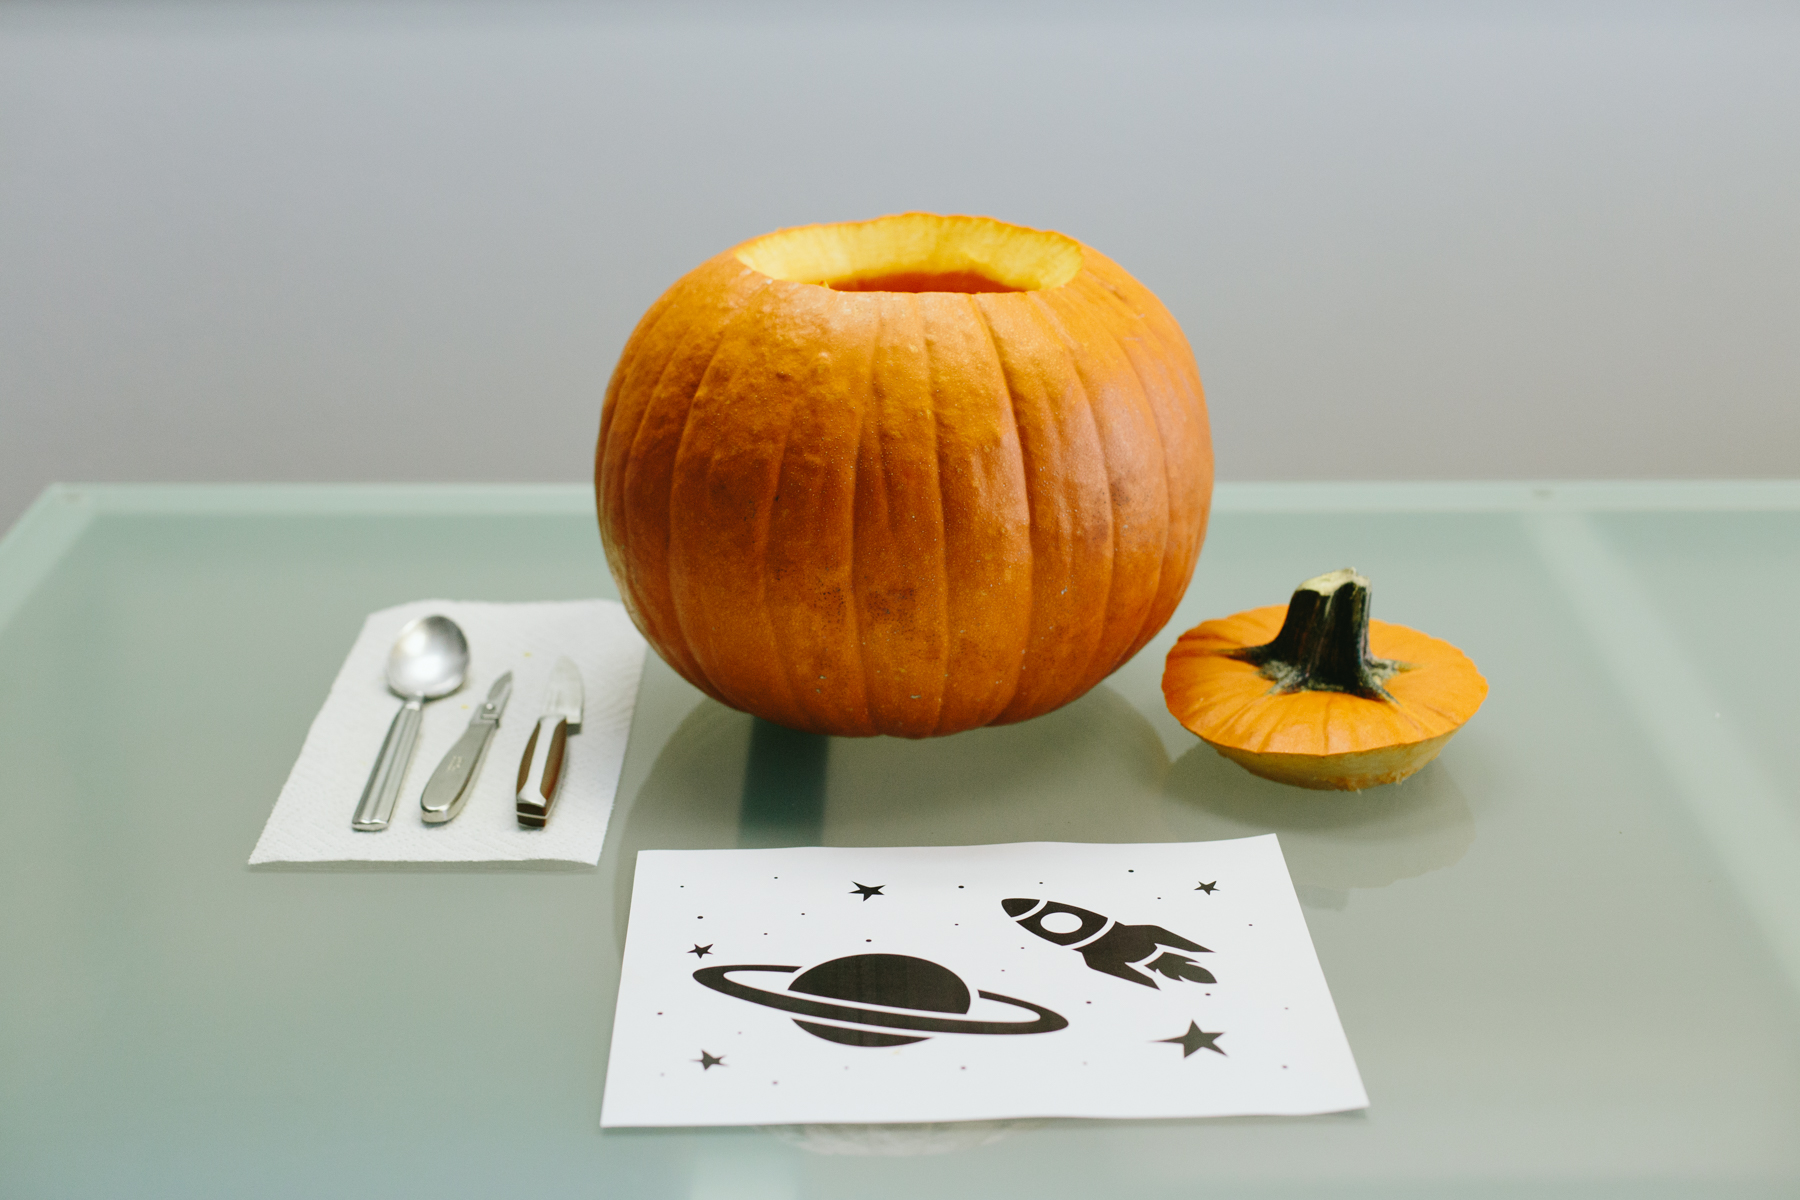 solar system pumpkin carving